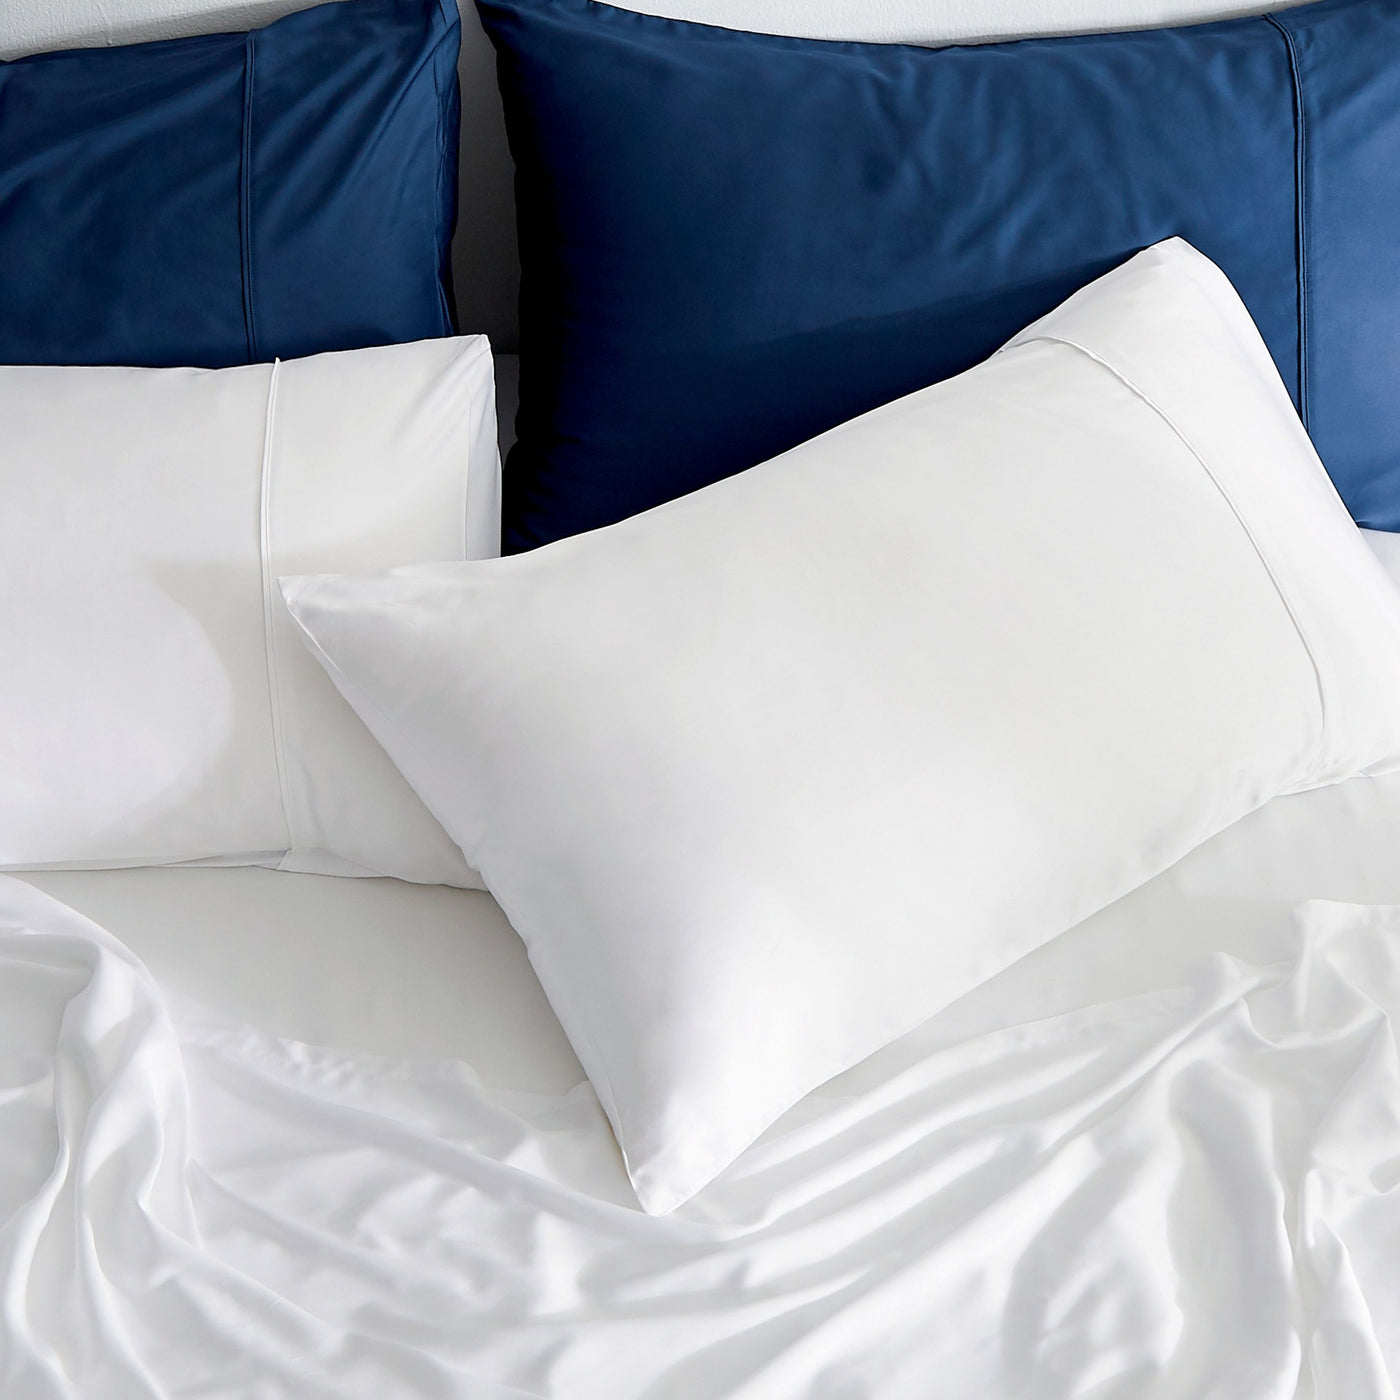 GOKOTTA Bamboo Cooling Pillow Cases Set of 2, Navy Blue